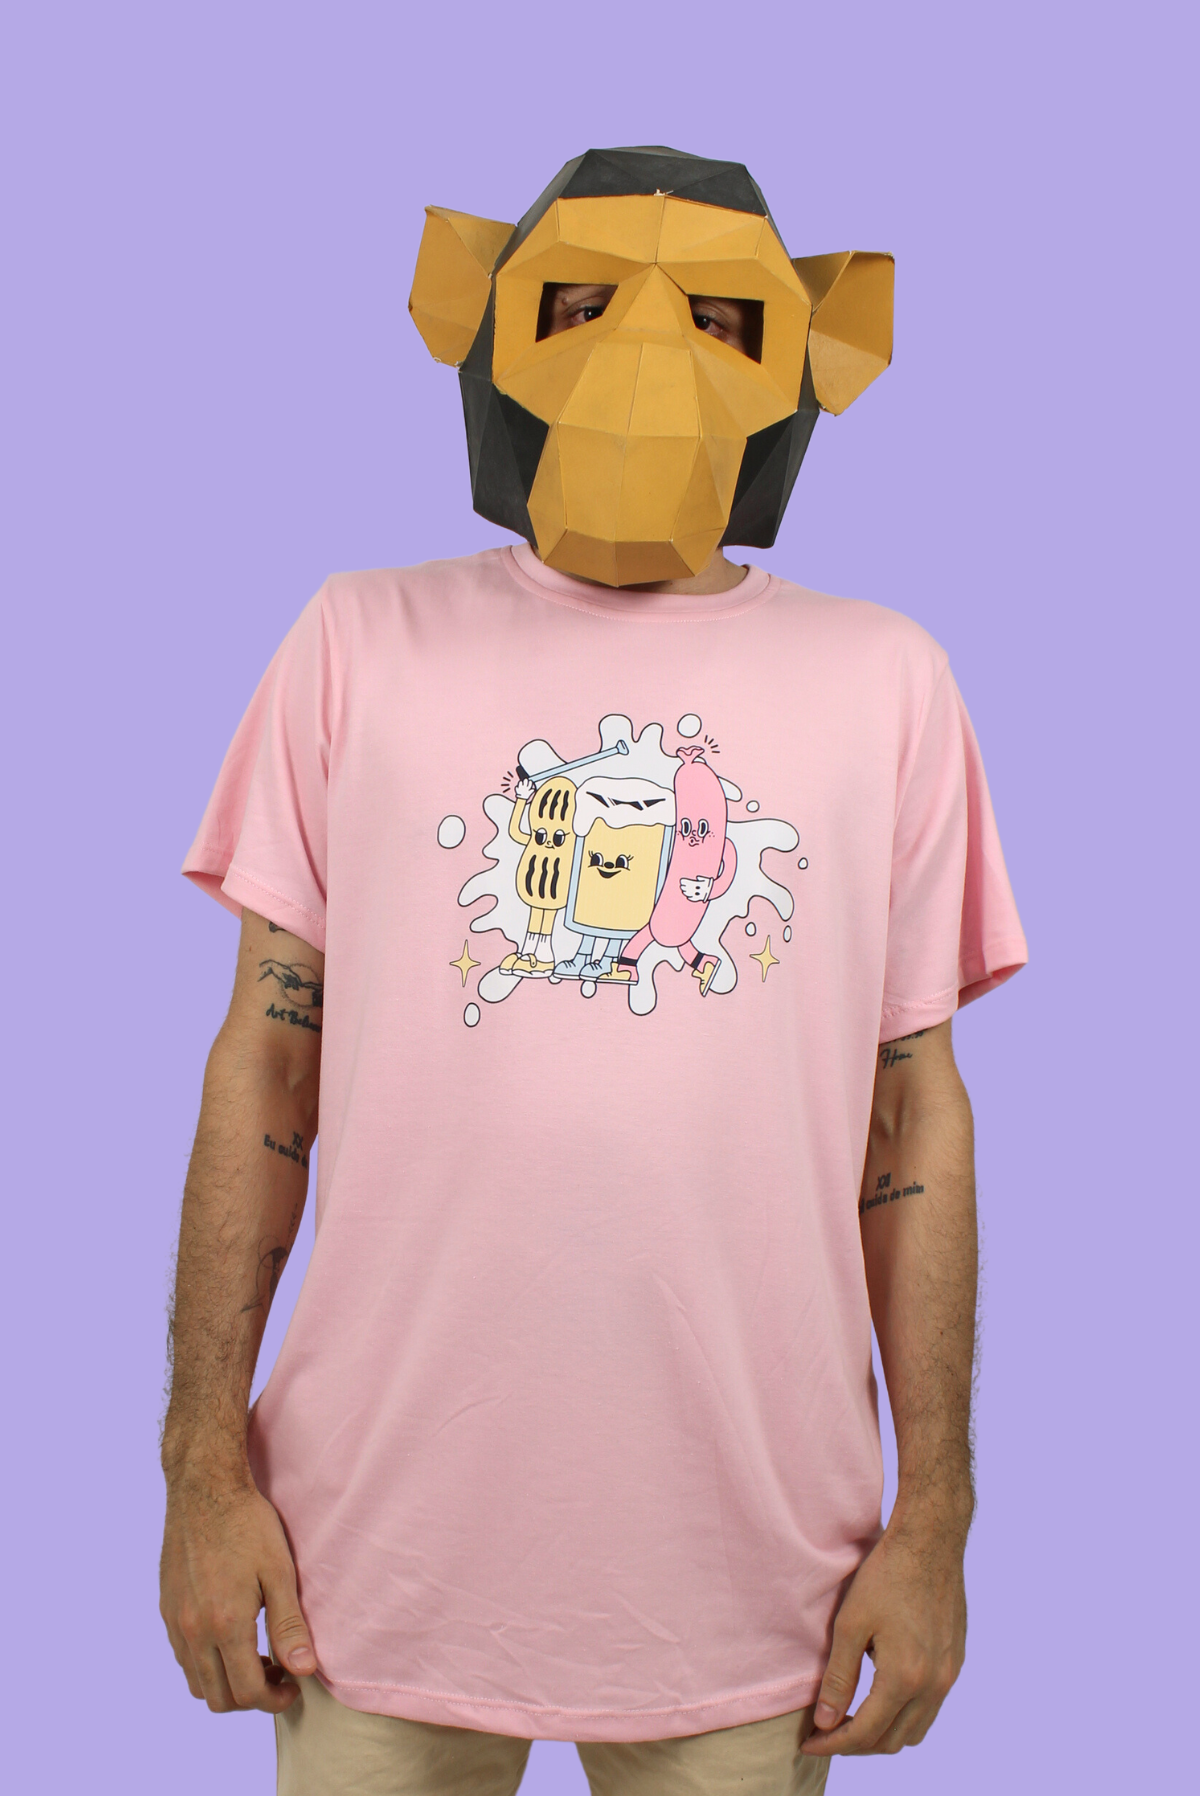 Camiseta unisex rosa salchicha